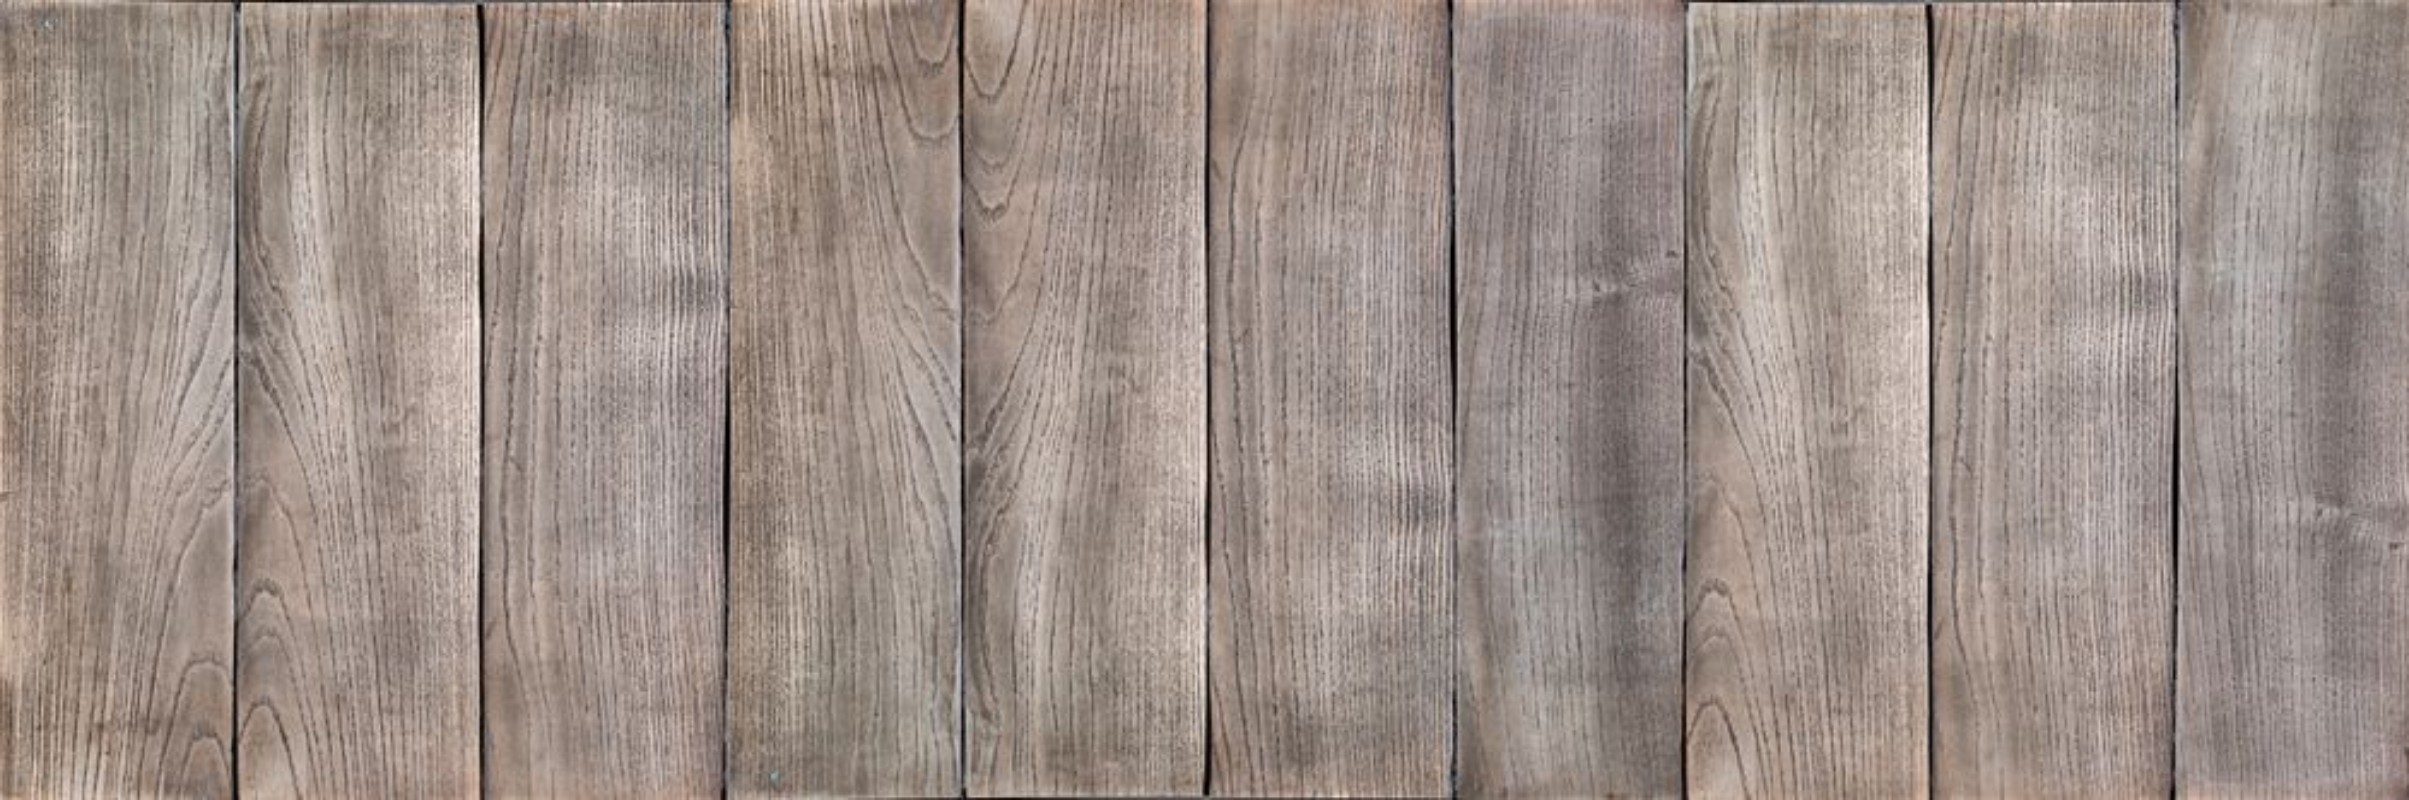 Bild på Wood background or texture